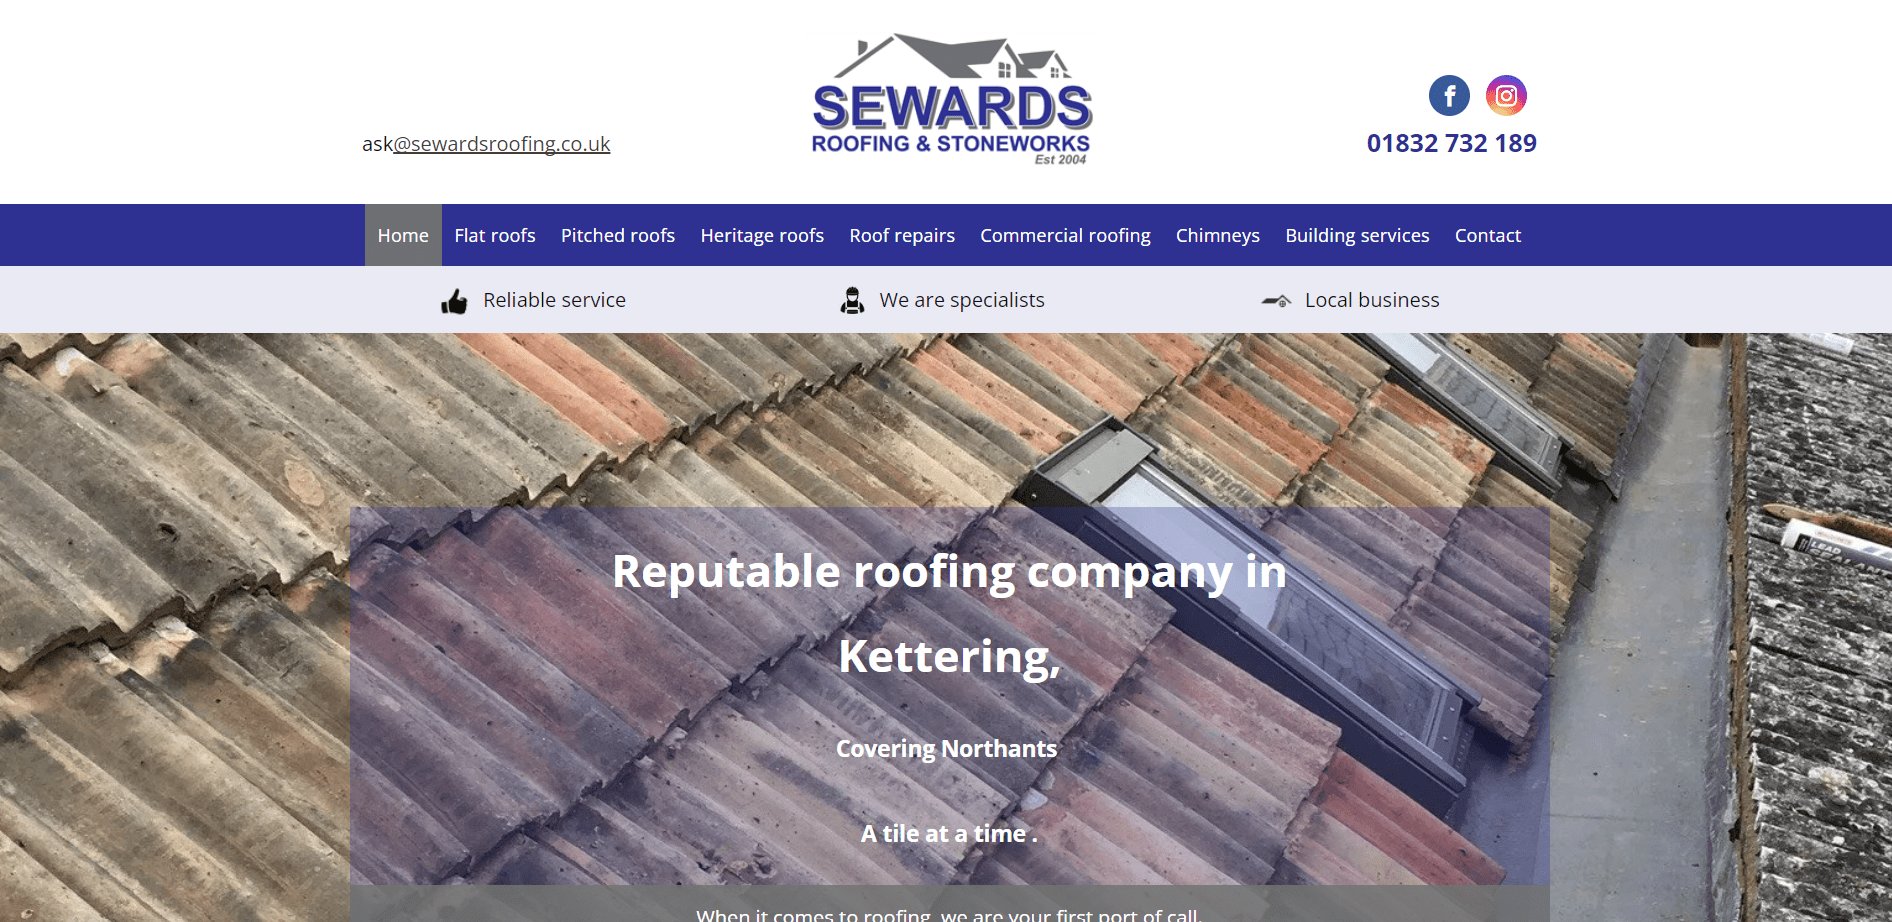 Sewards Roofing & Stoneworks